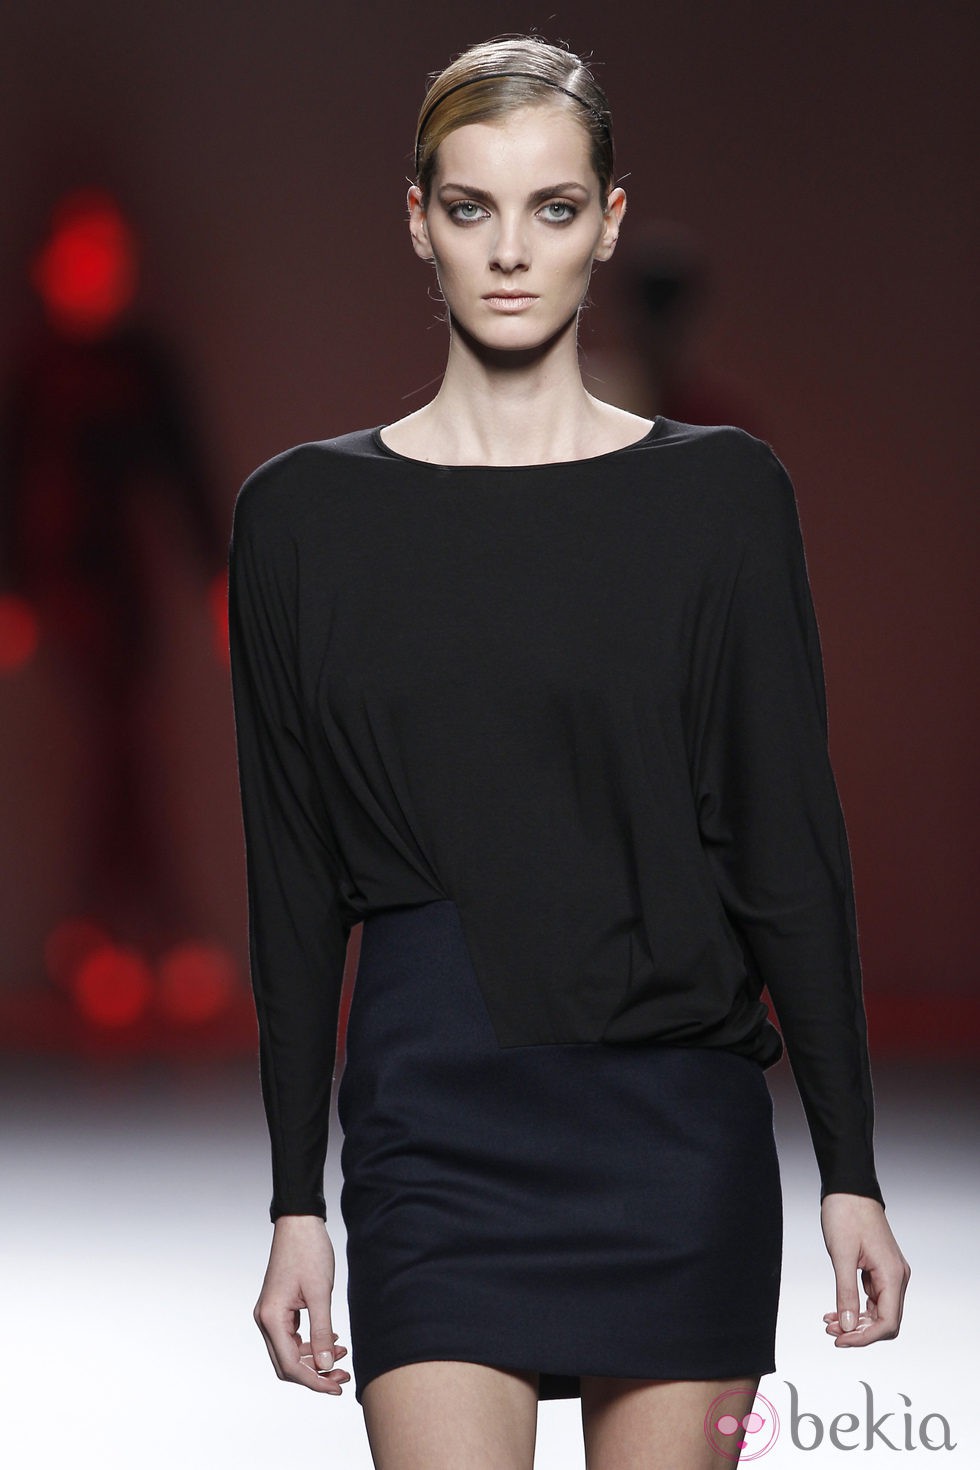 Camiseta negra y falda azul marino de la colección otoño/invierno 2012/2013 de Amaya Arzuaga